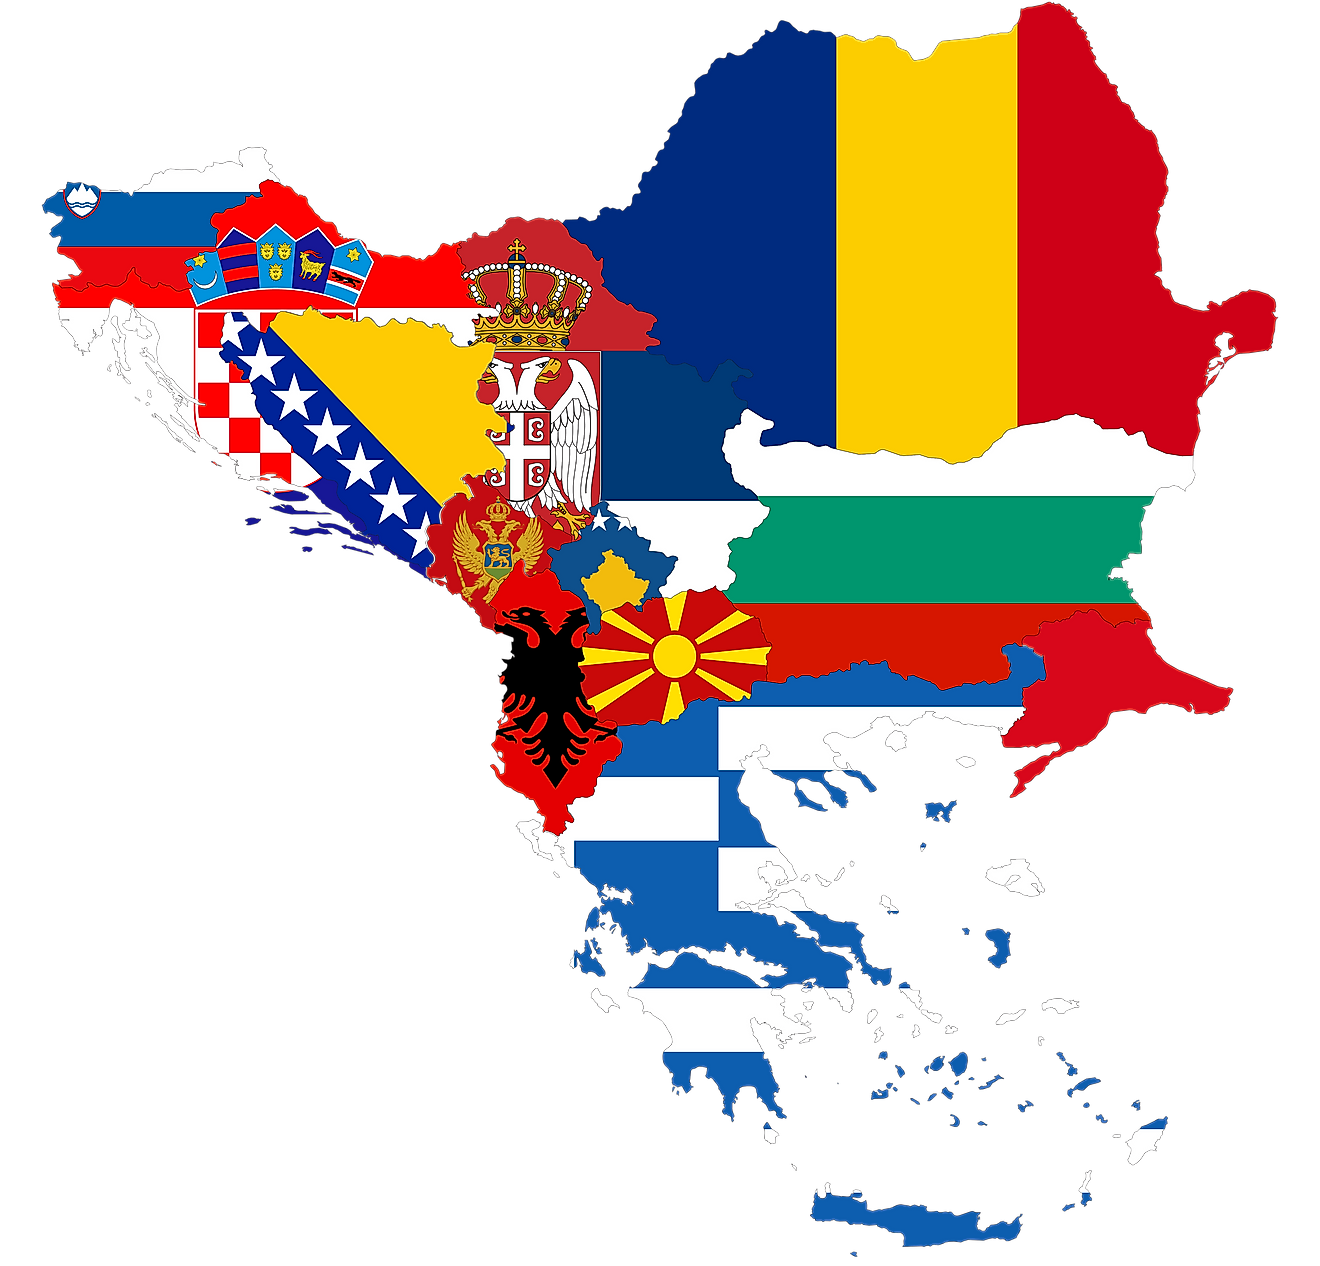 Balkan Peninsula 